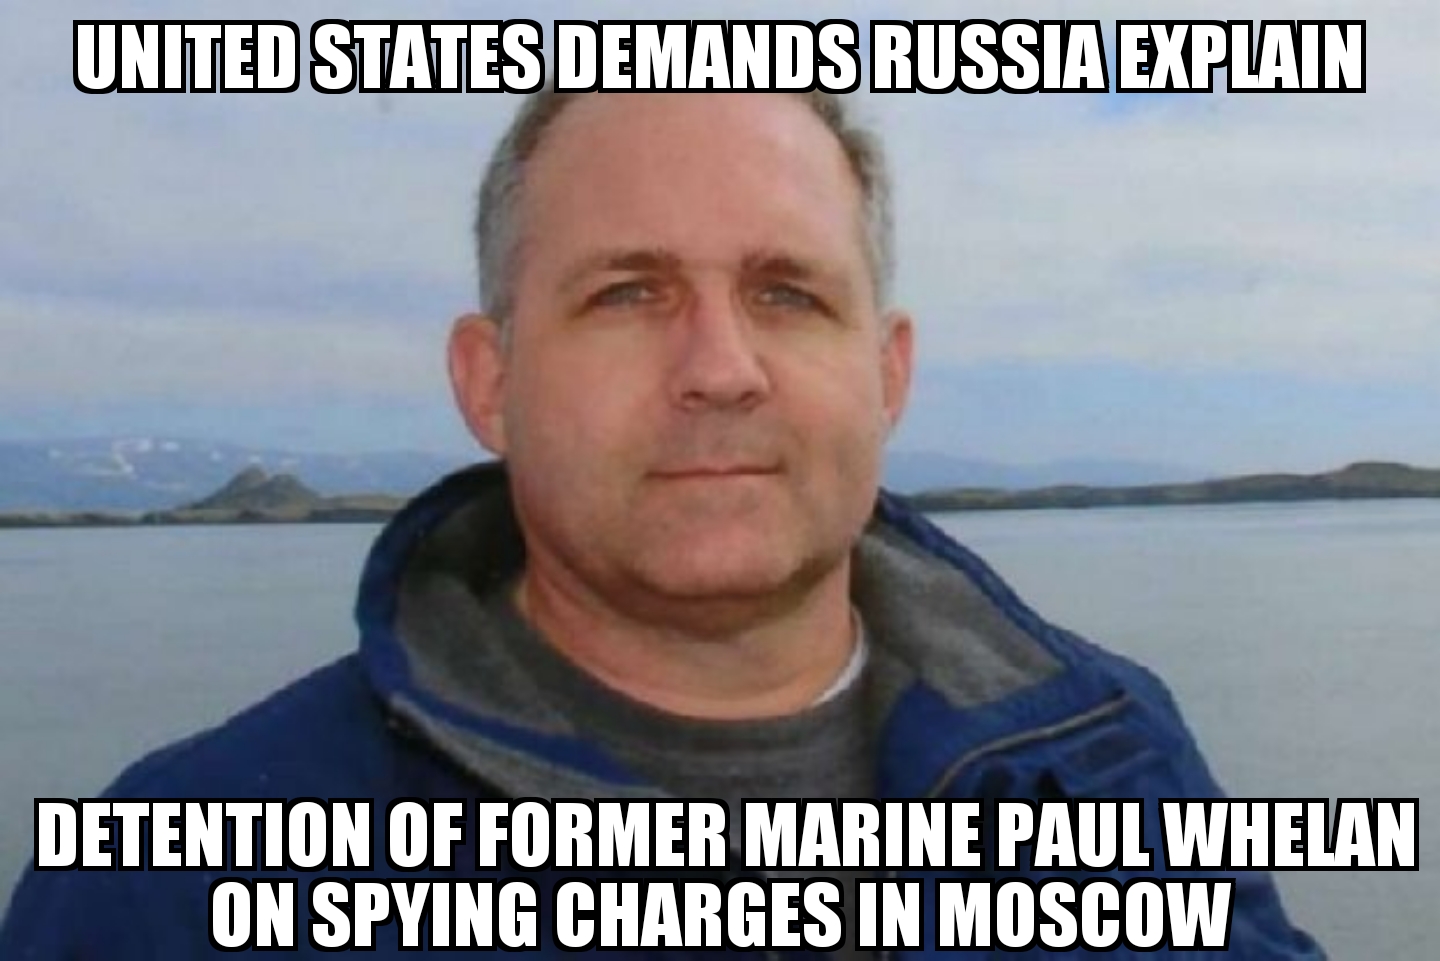 U.S. demands Russia explain Paul Whelan detention